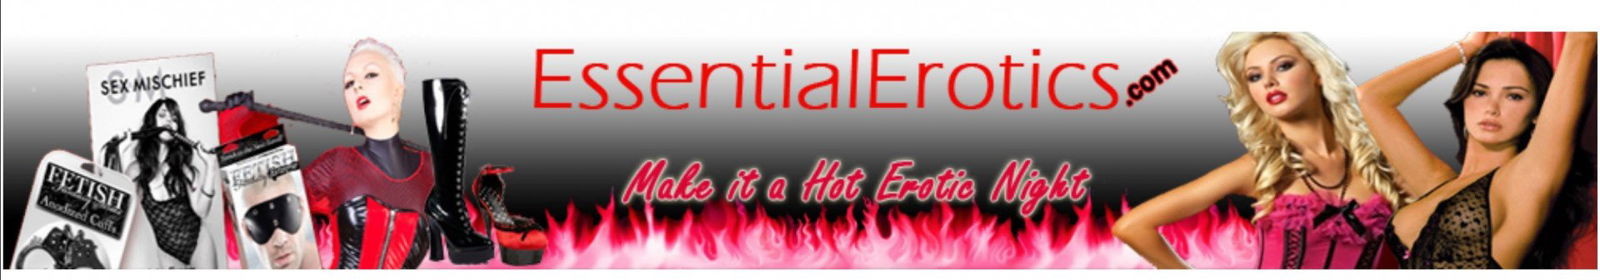 Cover photo of EssentialErotics.com